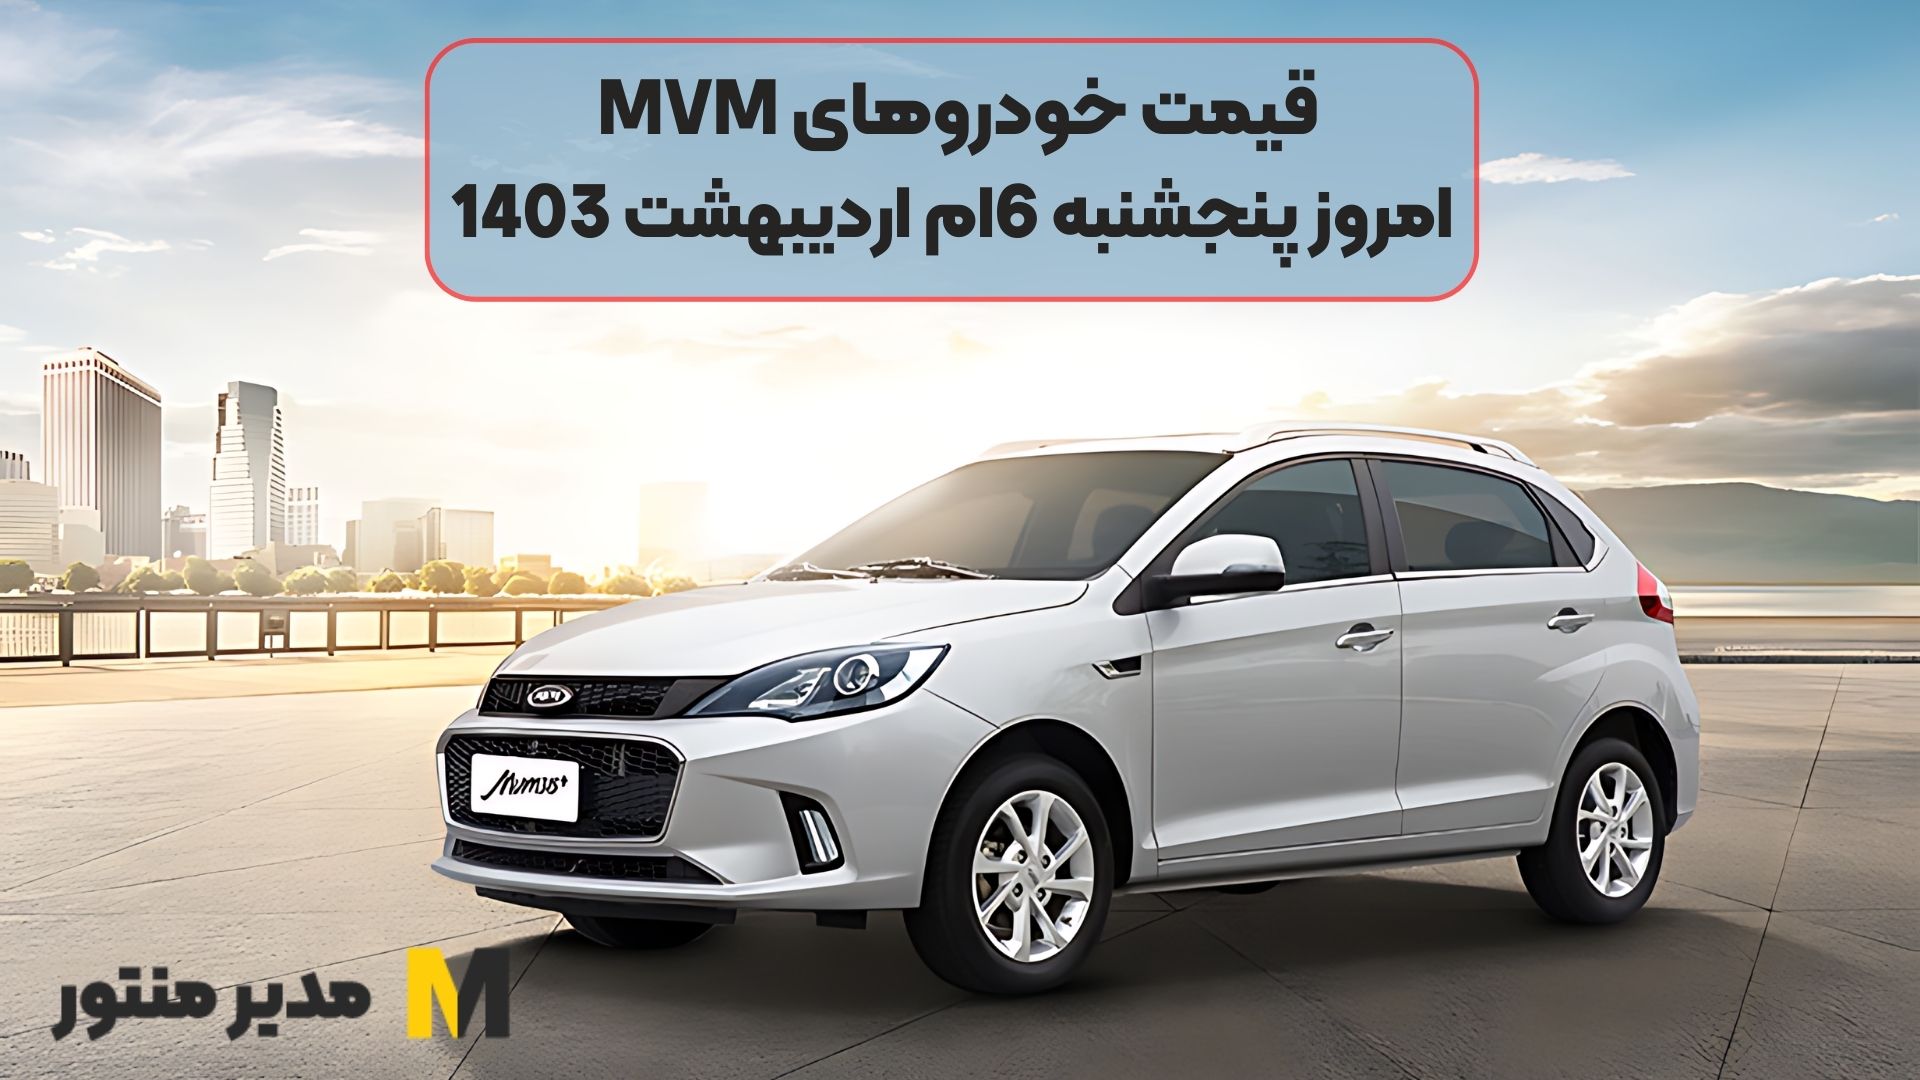 قیمت خودروهای MVM امروز پنجشنبه 6ام اردیبهشت 1403